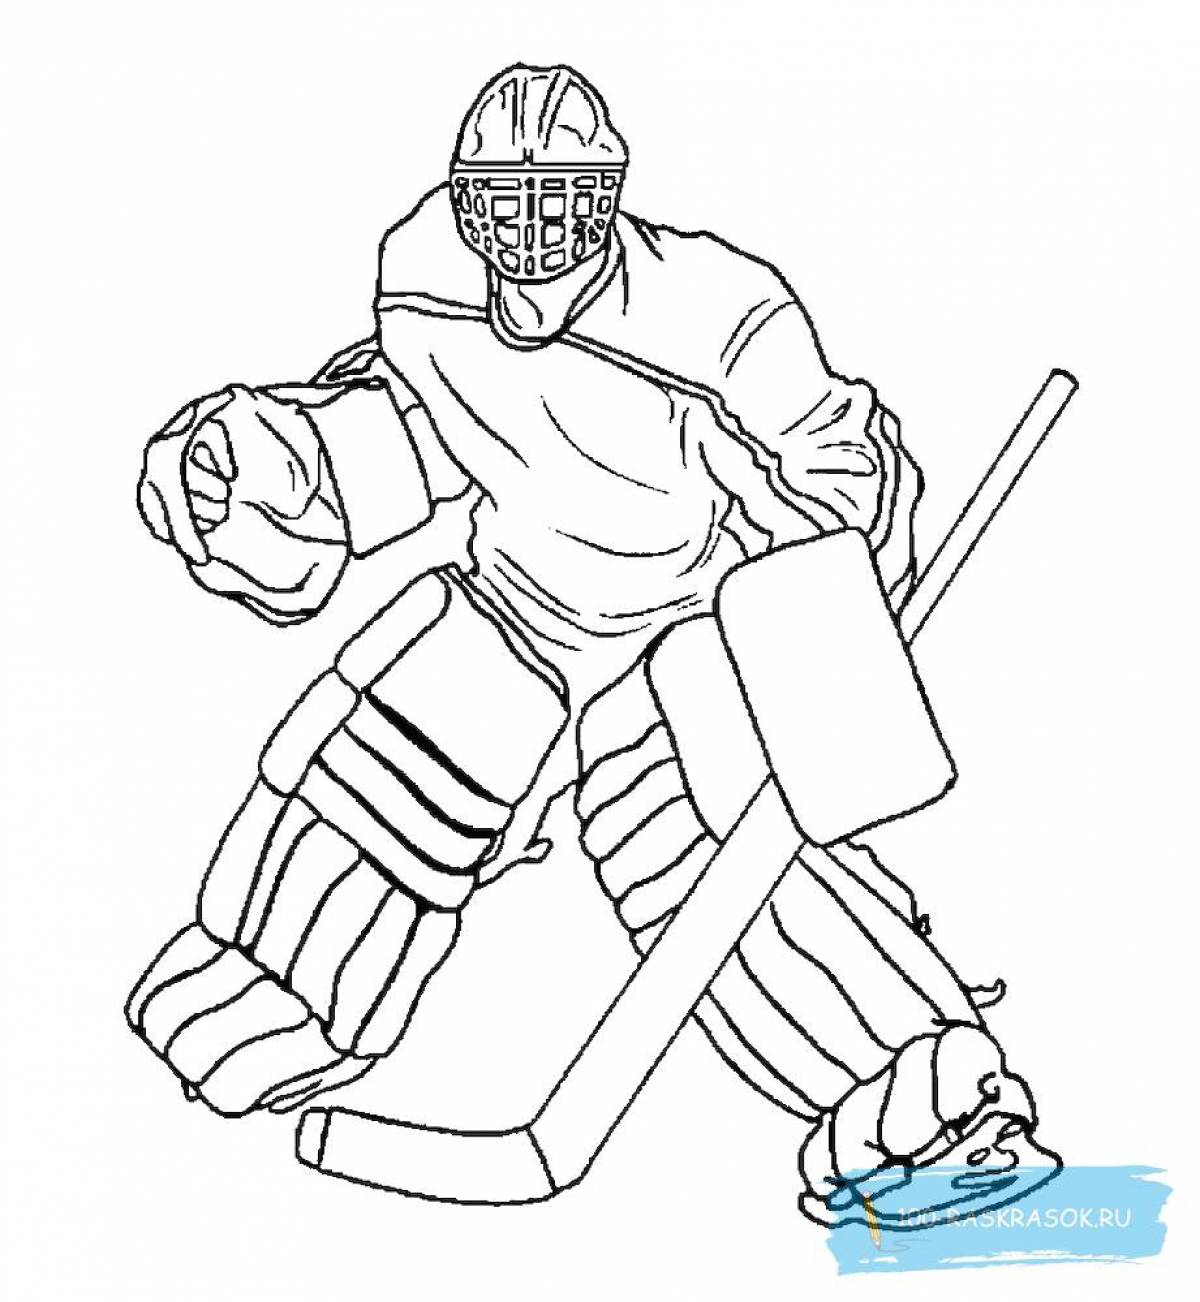 Красочная страница-раскраска хоккеист для детей